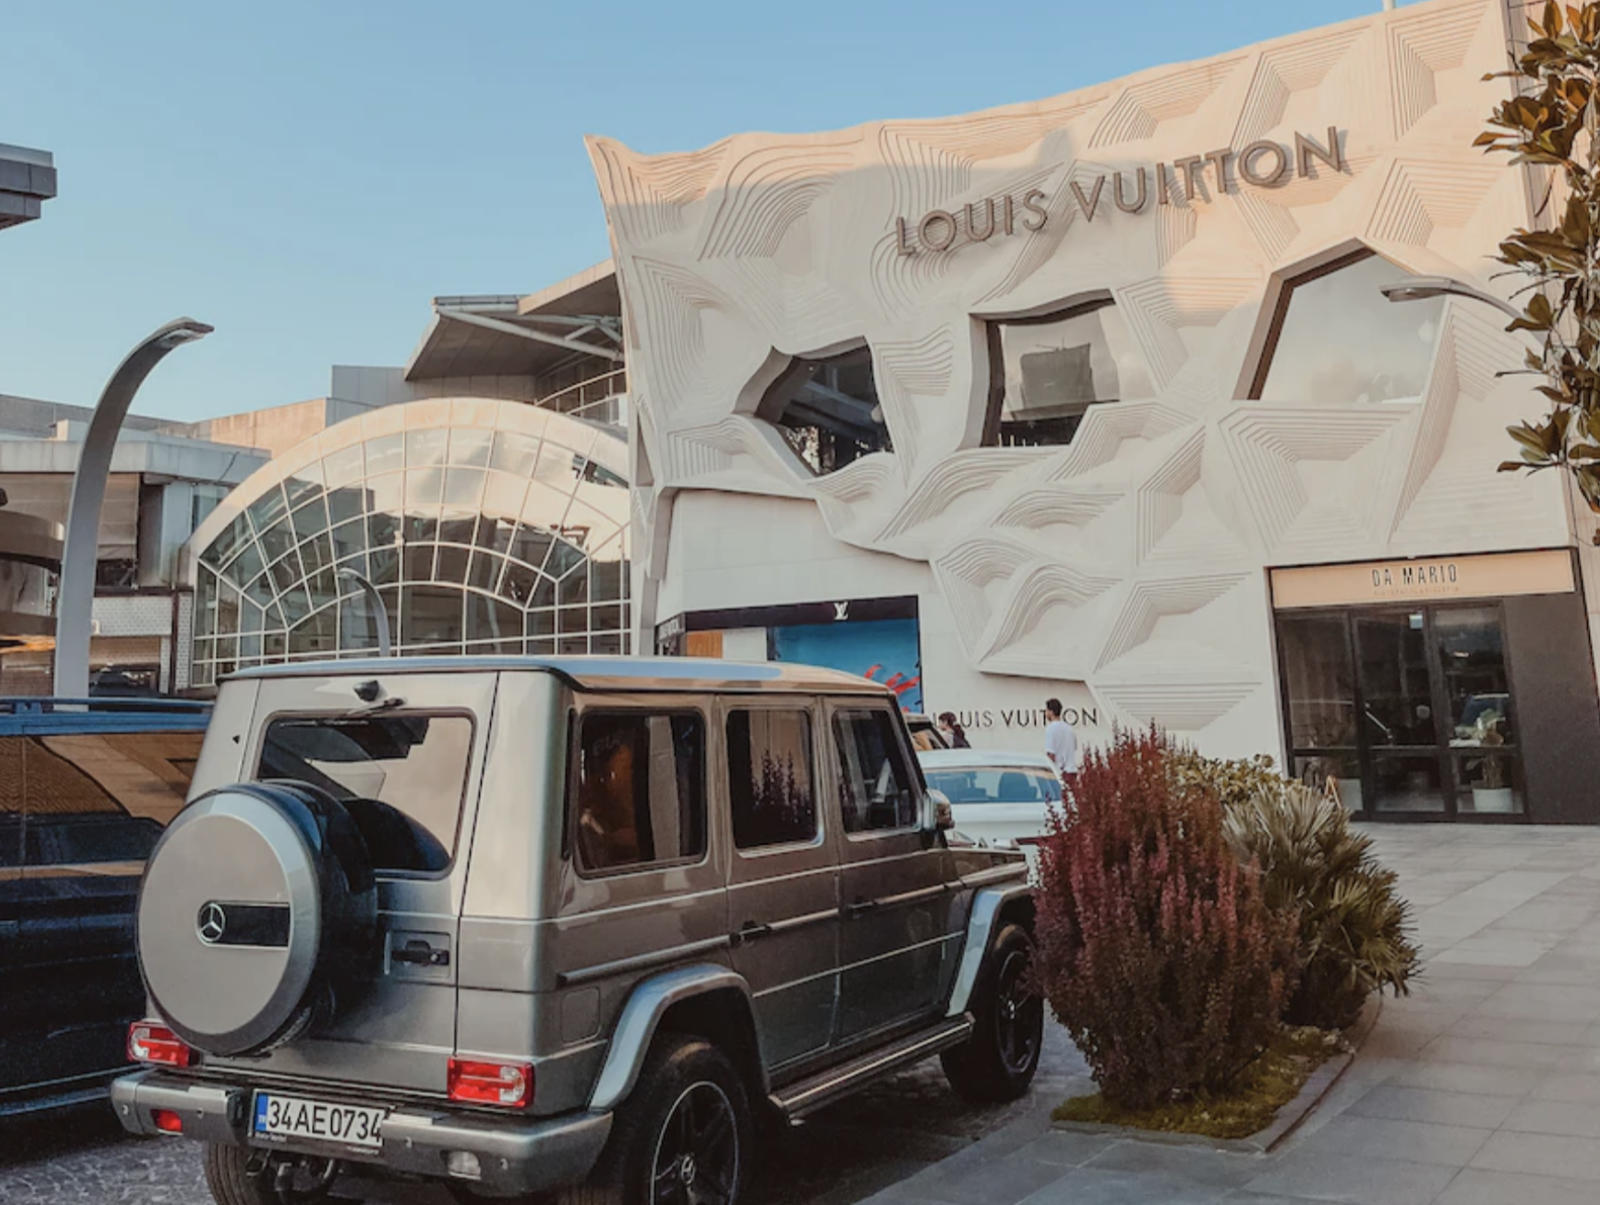 Louis Vuitton Loses Copyright Infringement Lawsuit